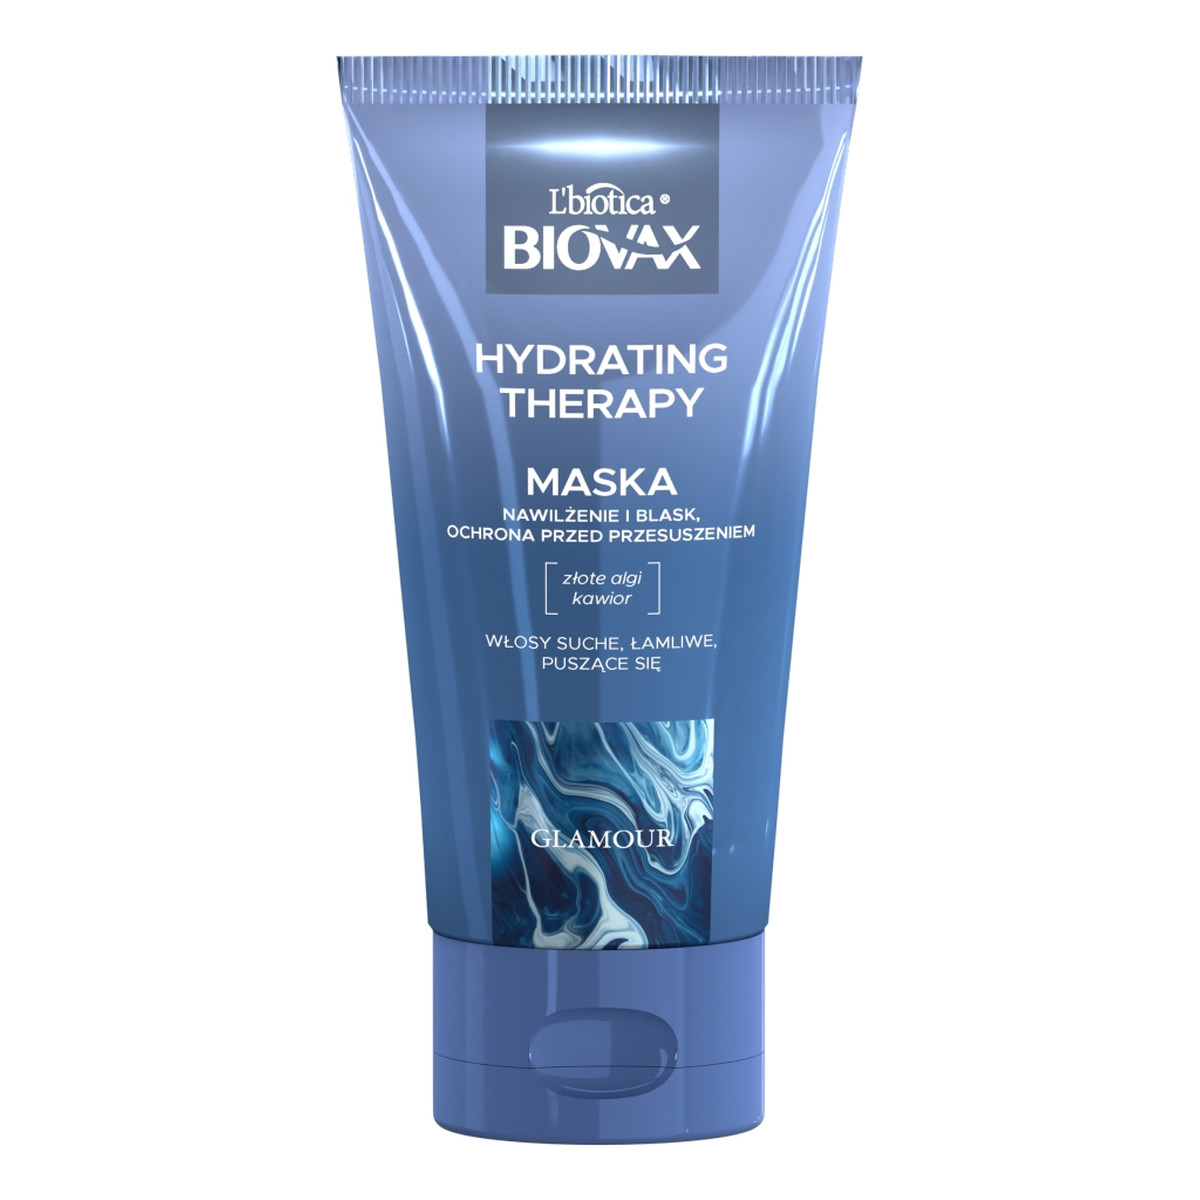 Biovax Glamour hydrating therapy nawilżająca maska do włosów 150ml